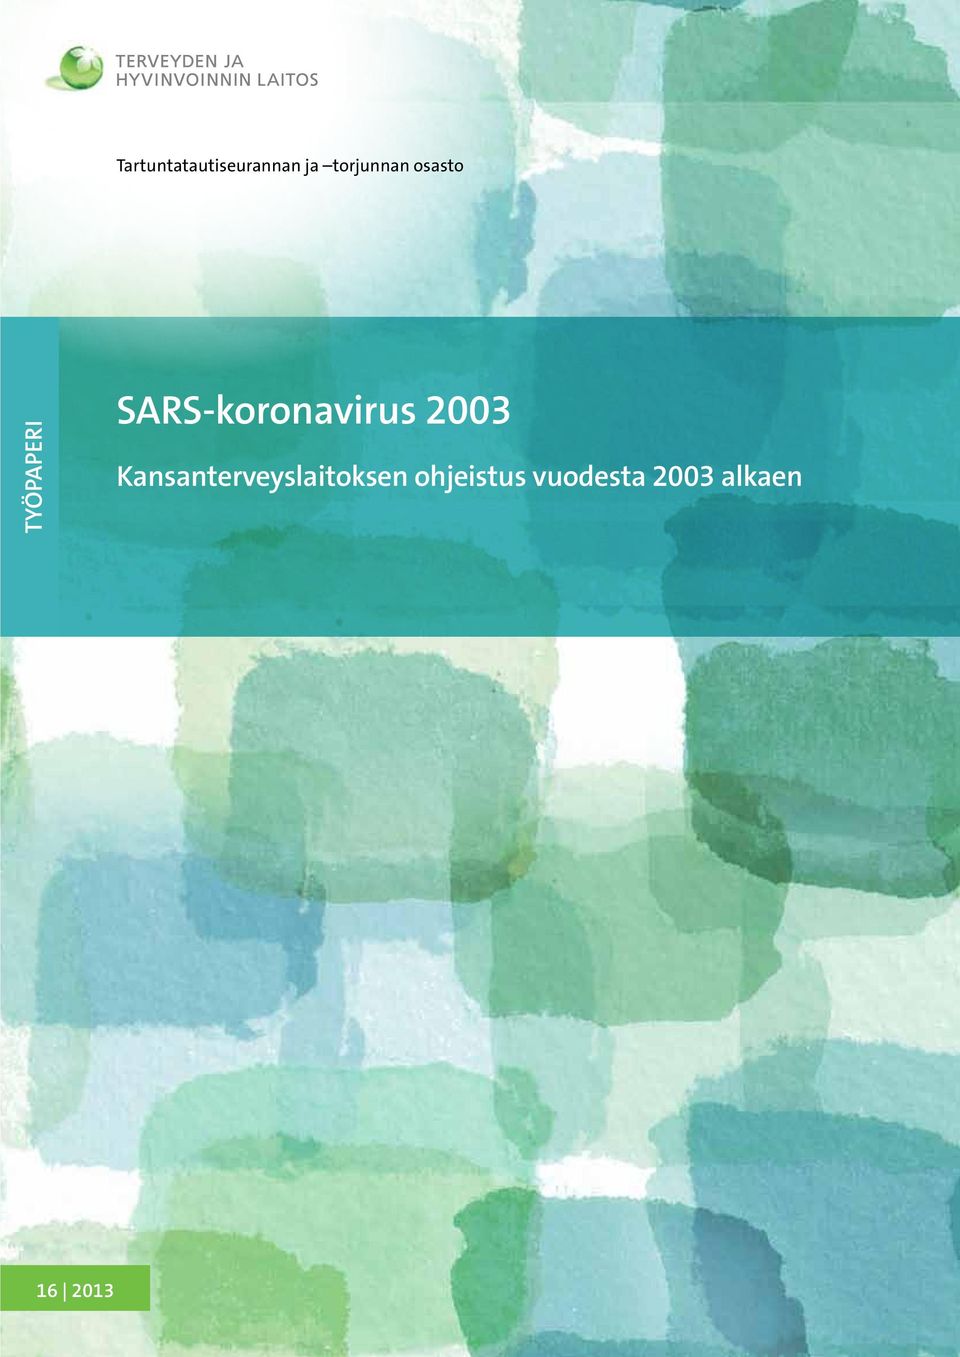 SARS-koronavirus 2003